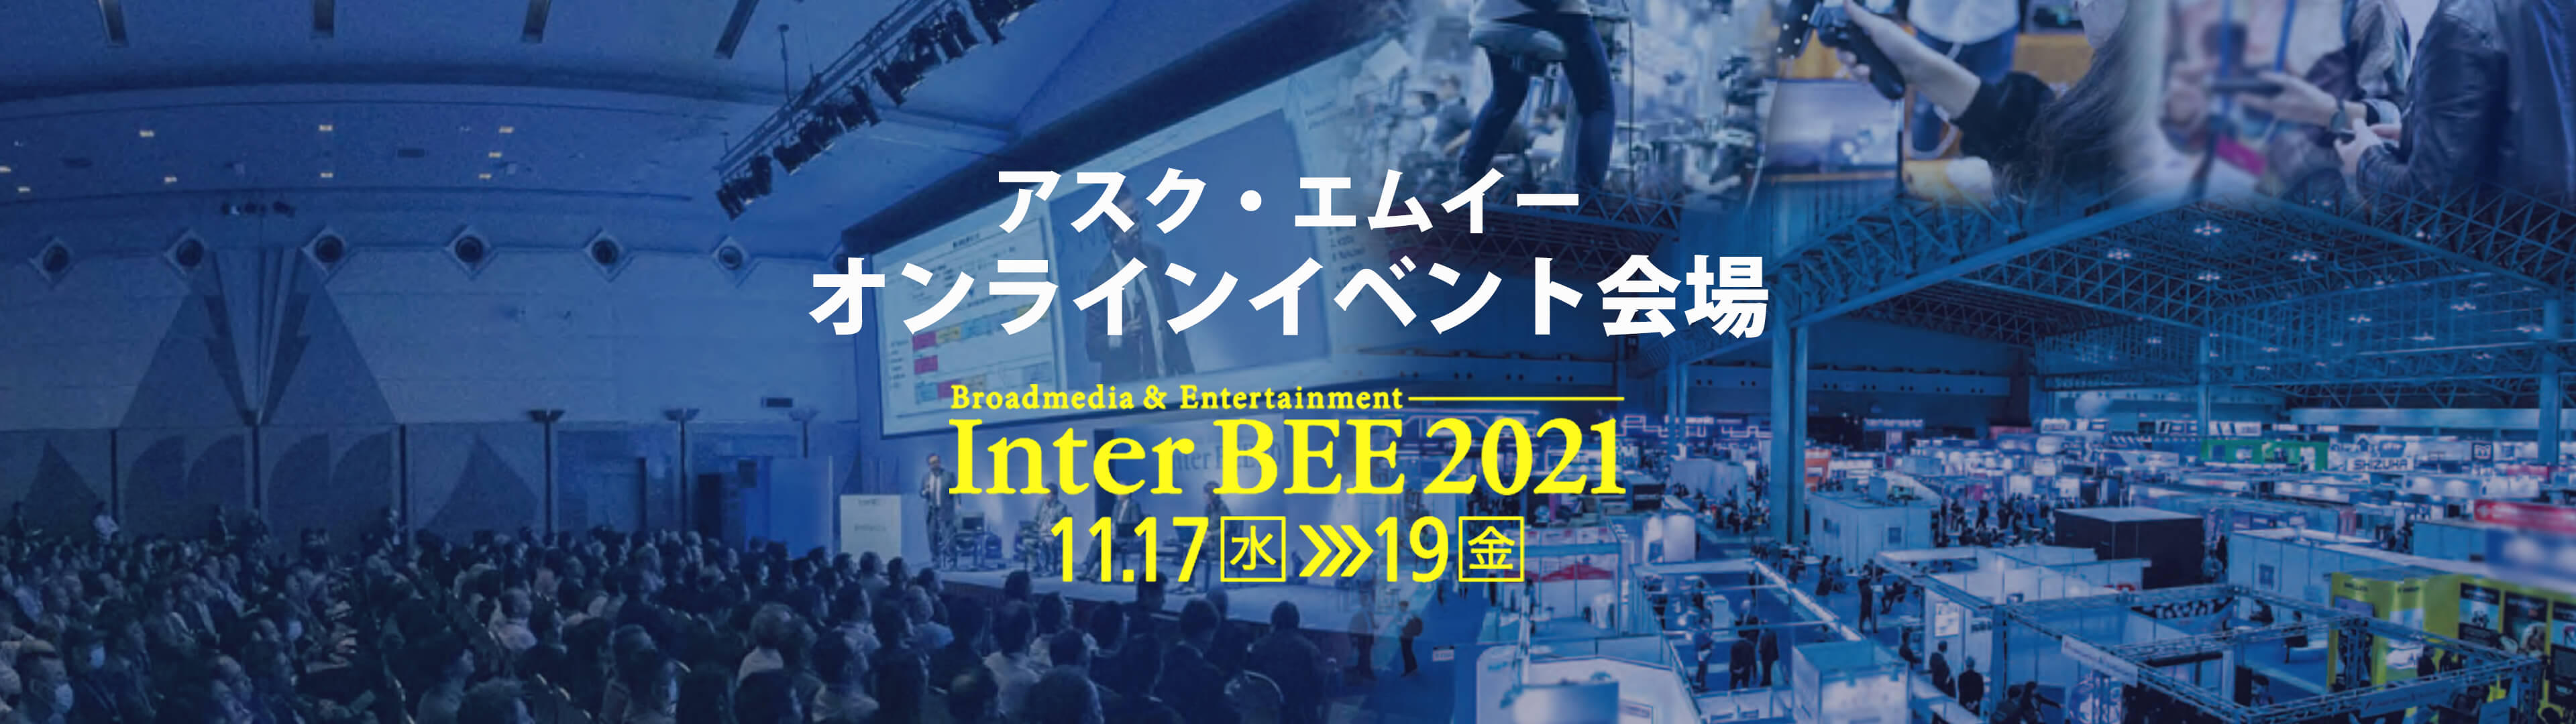 inter bee 2021 online top banner